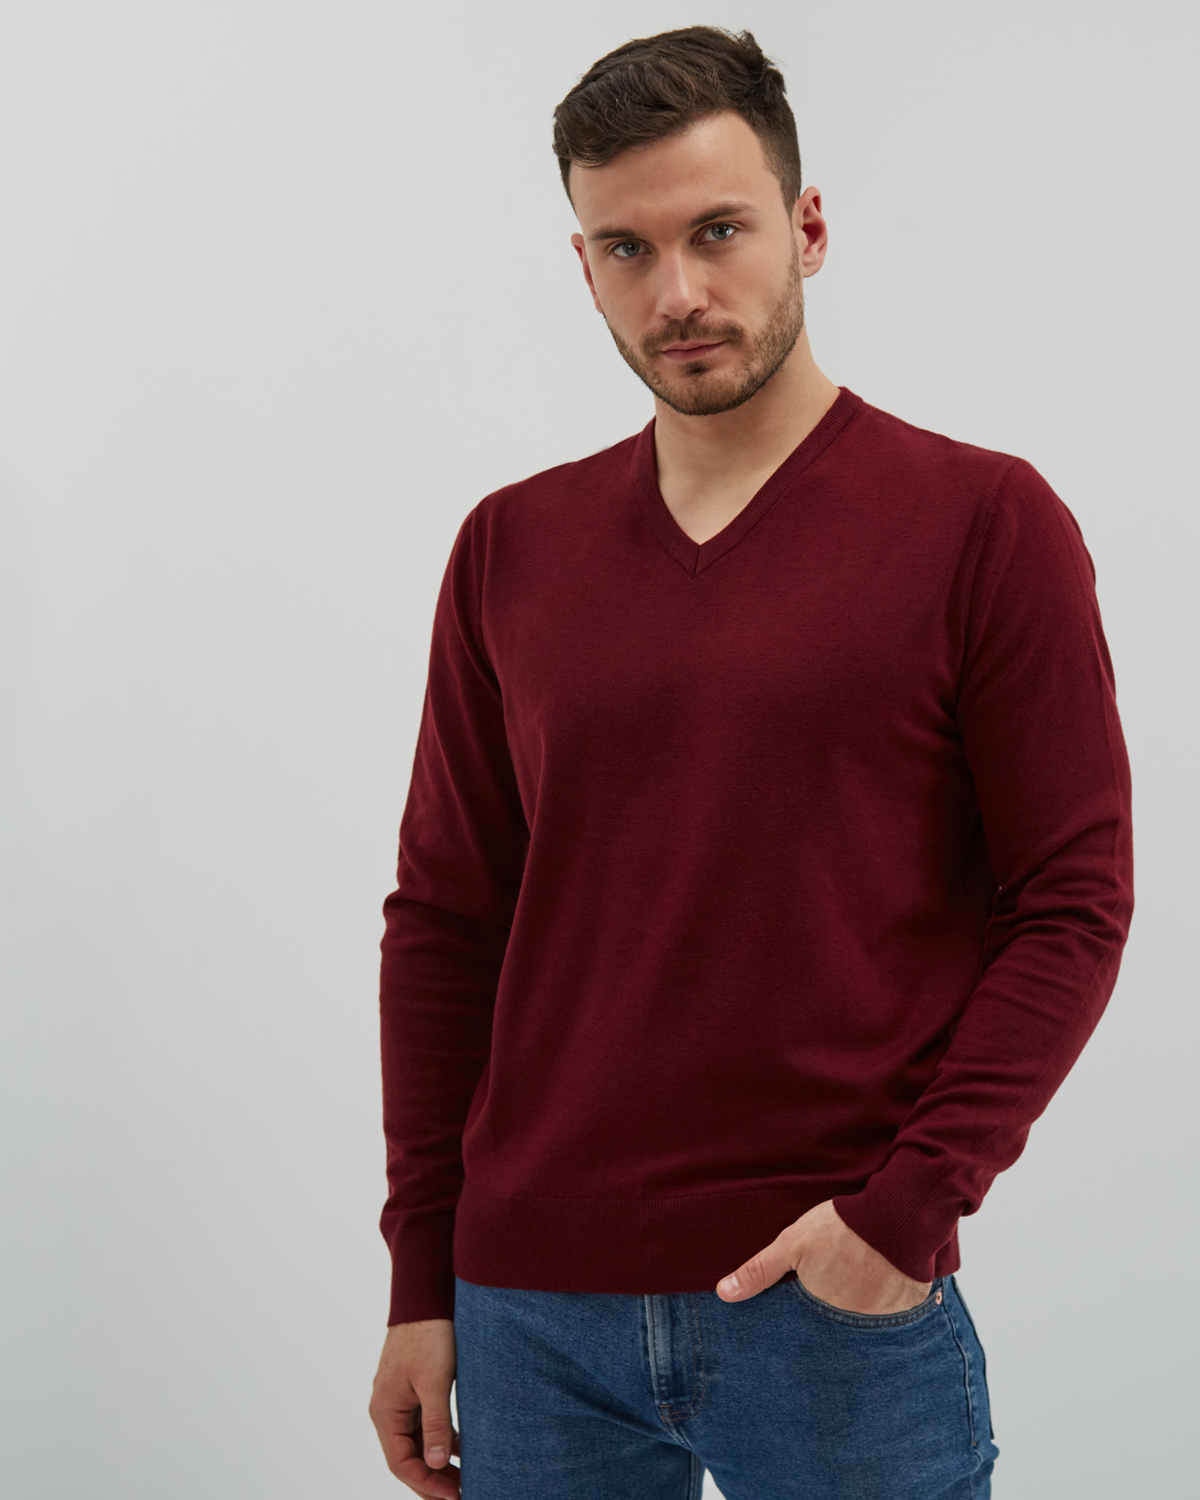 Пуловер мужской MANAFOFF 8106 красный XXXL